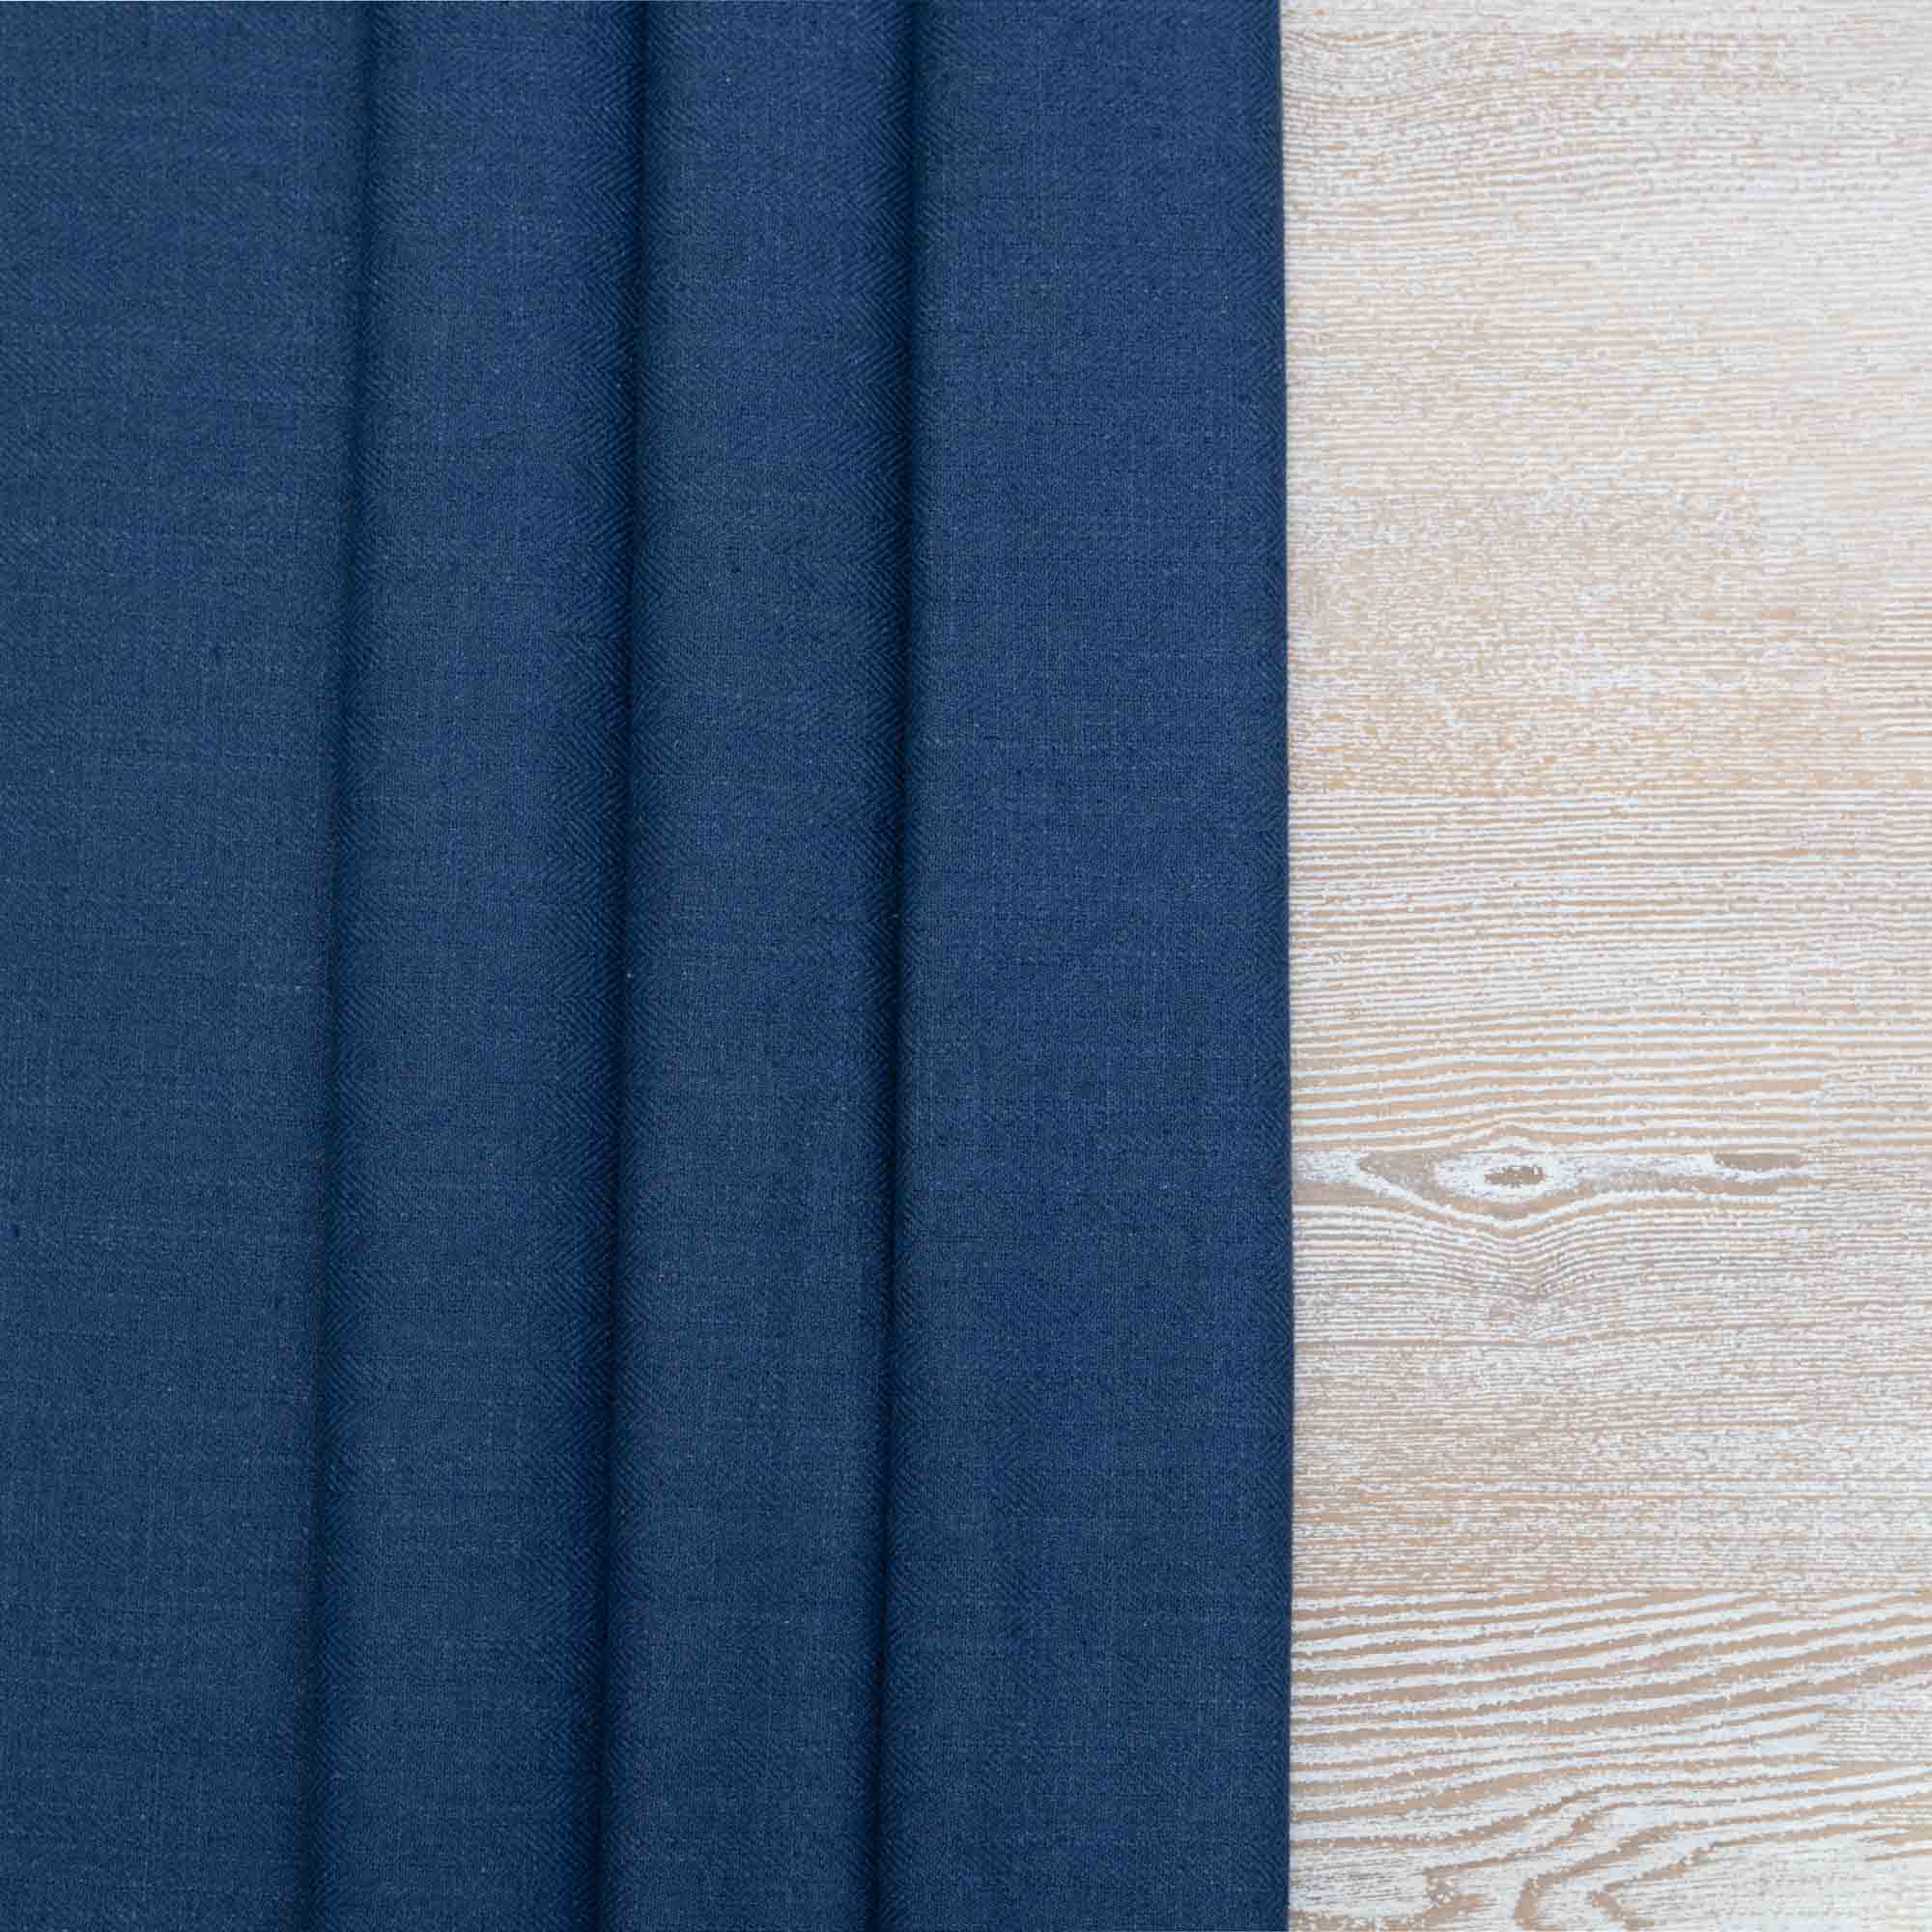 Gir Cobalt Cotton Linen Blend Fabric